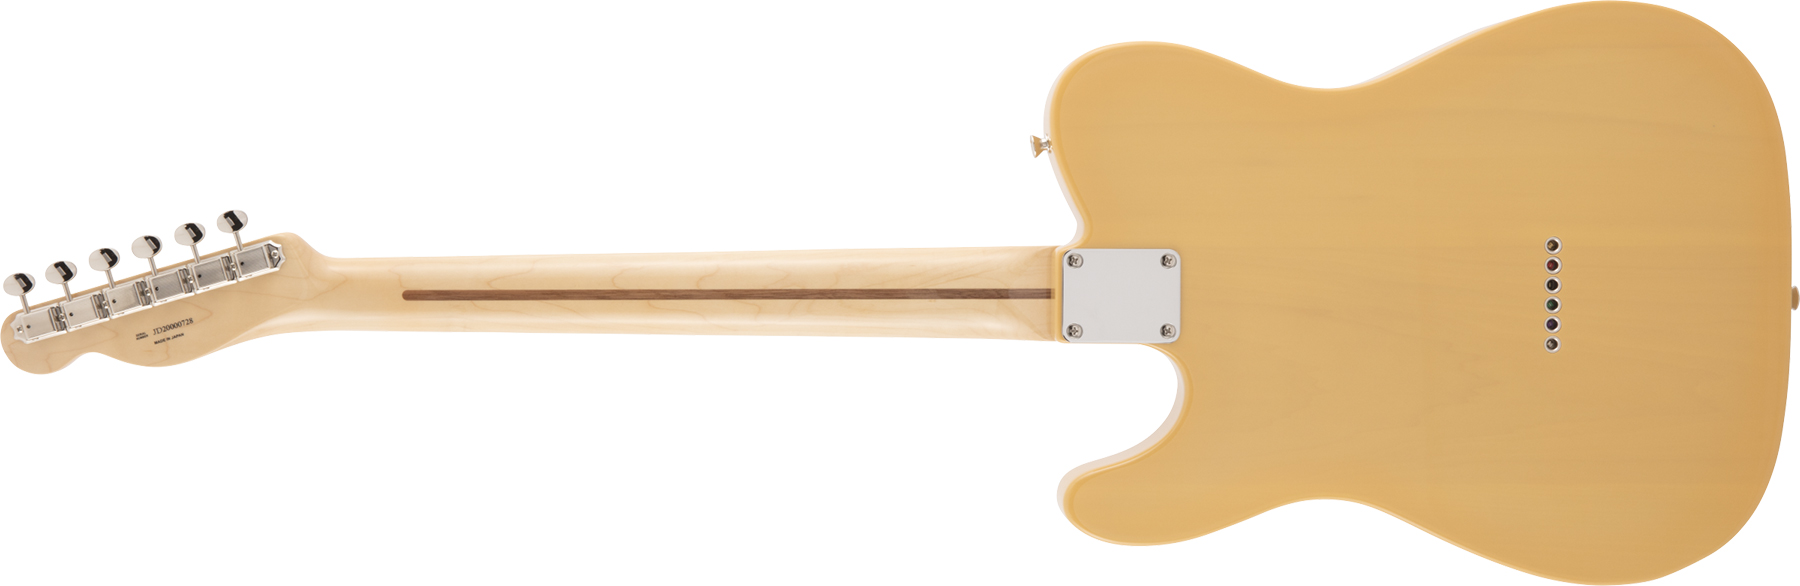 Fender Tele Traditional 50s Jap Mn - Butterscotch Blonde - E-Gitarre in Teleform - Variation 1